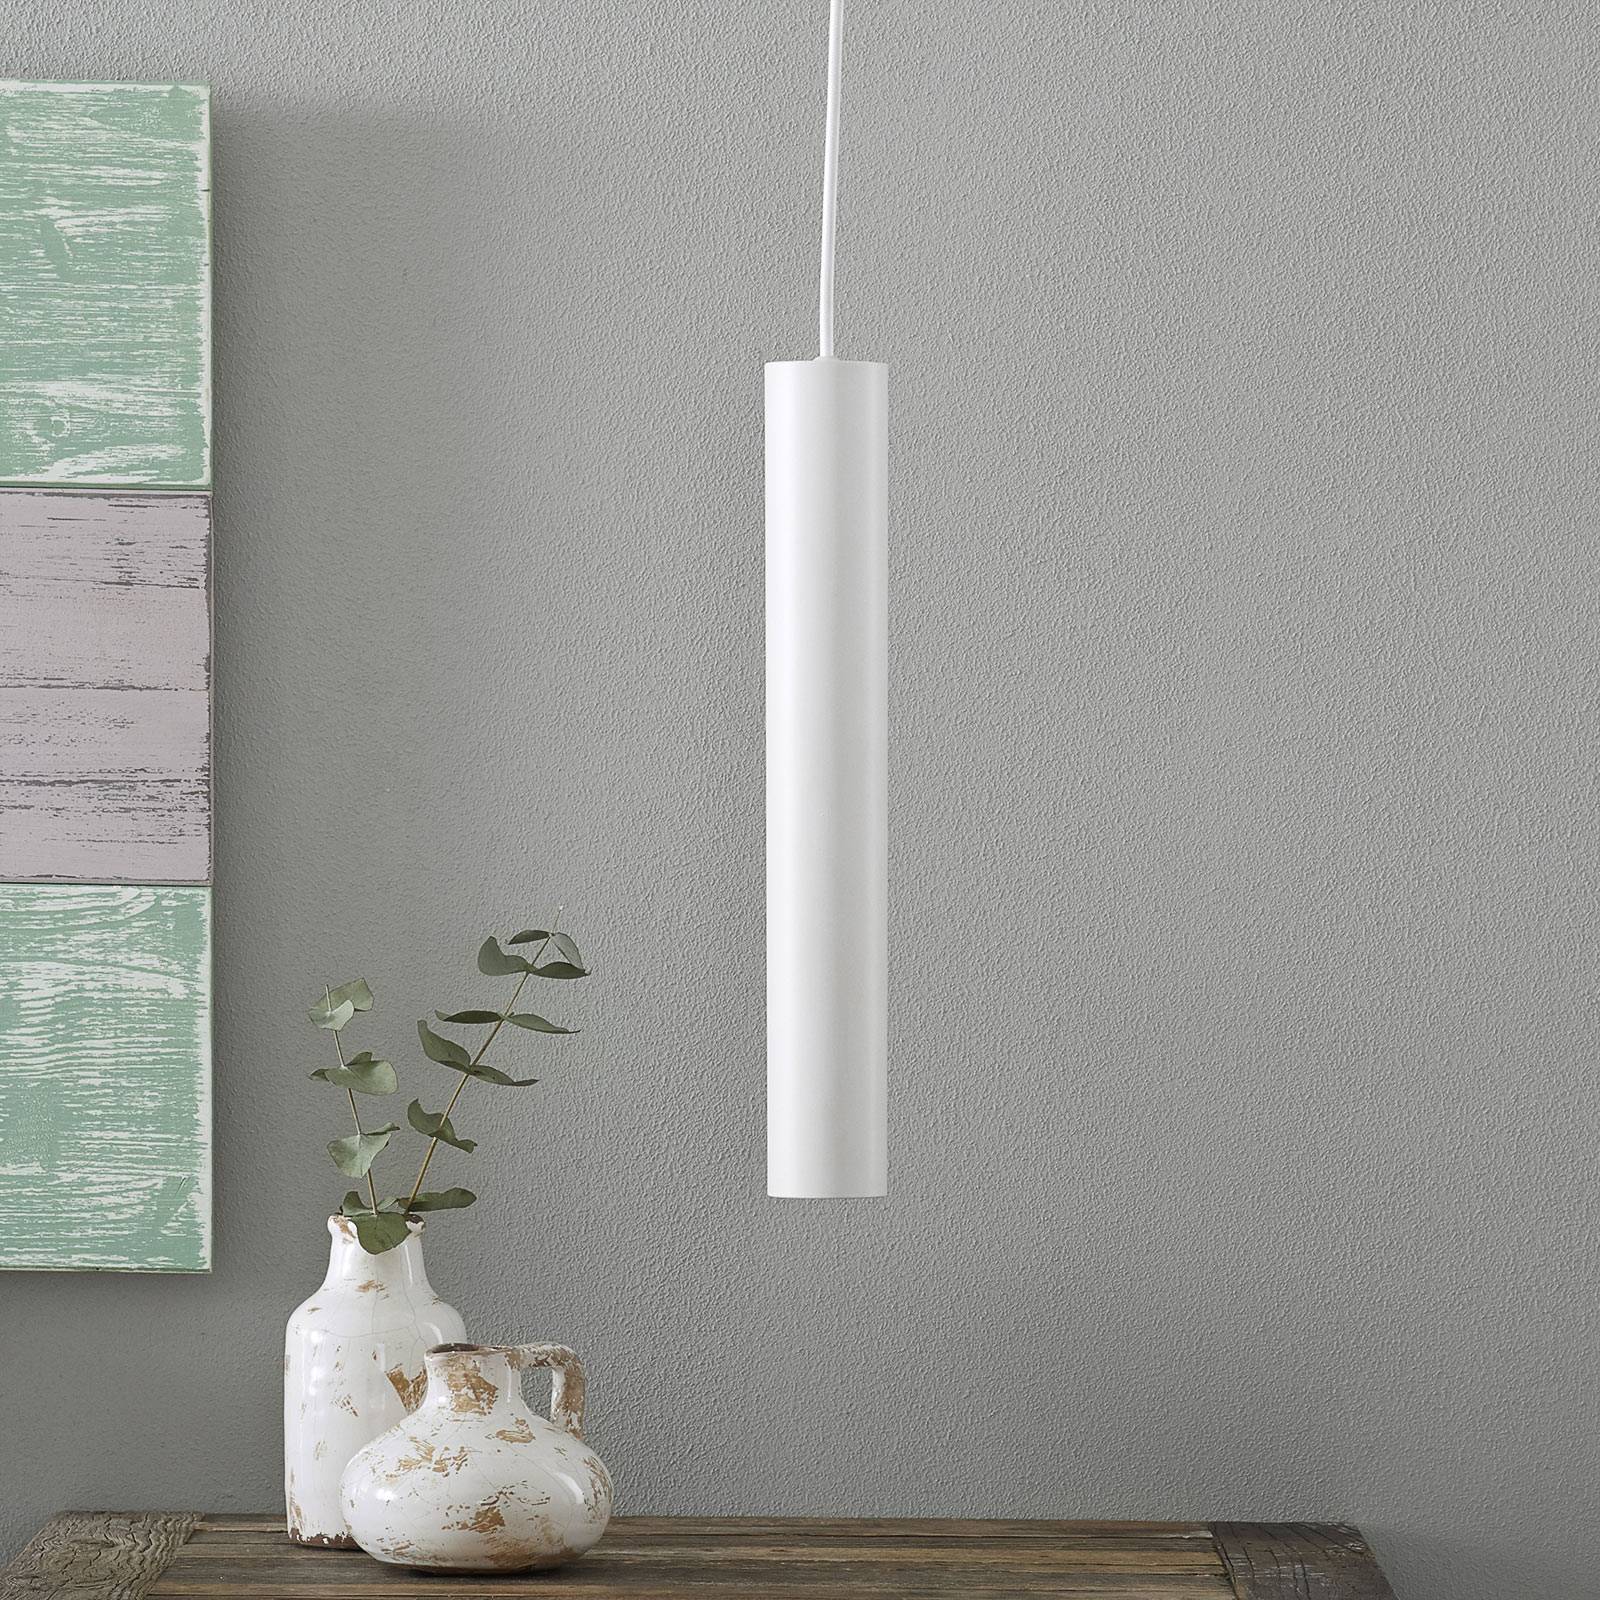 Lampa wisząca LED Look w smukłej formie, biała